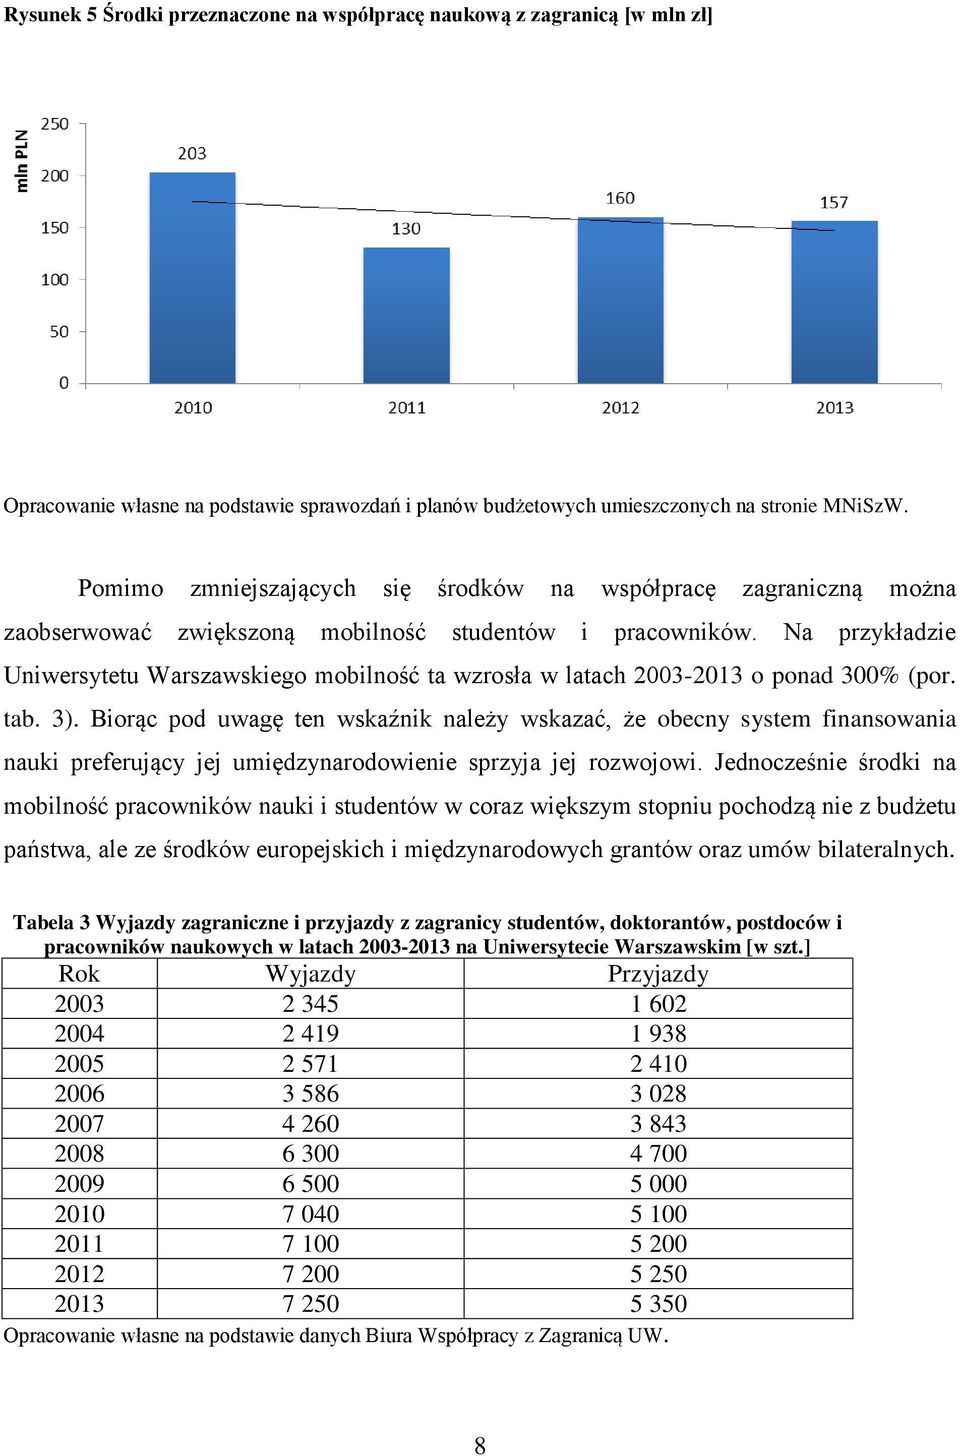 Na przykładzie Uniwersytetu Warszawskiego mobilność ta wzrosła w latach 2003-2013 o ponad 300% (por. tab. 3).